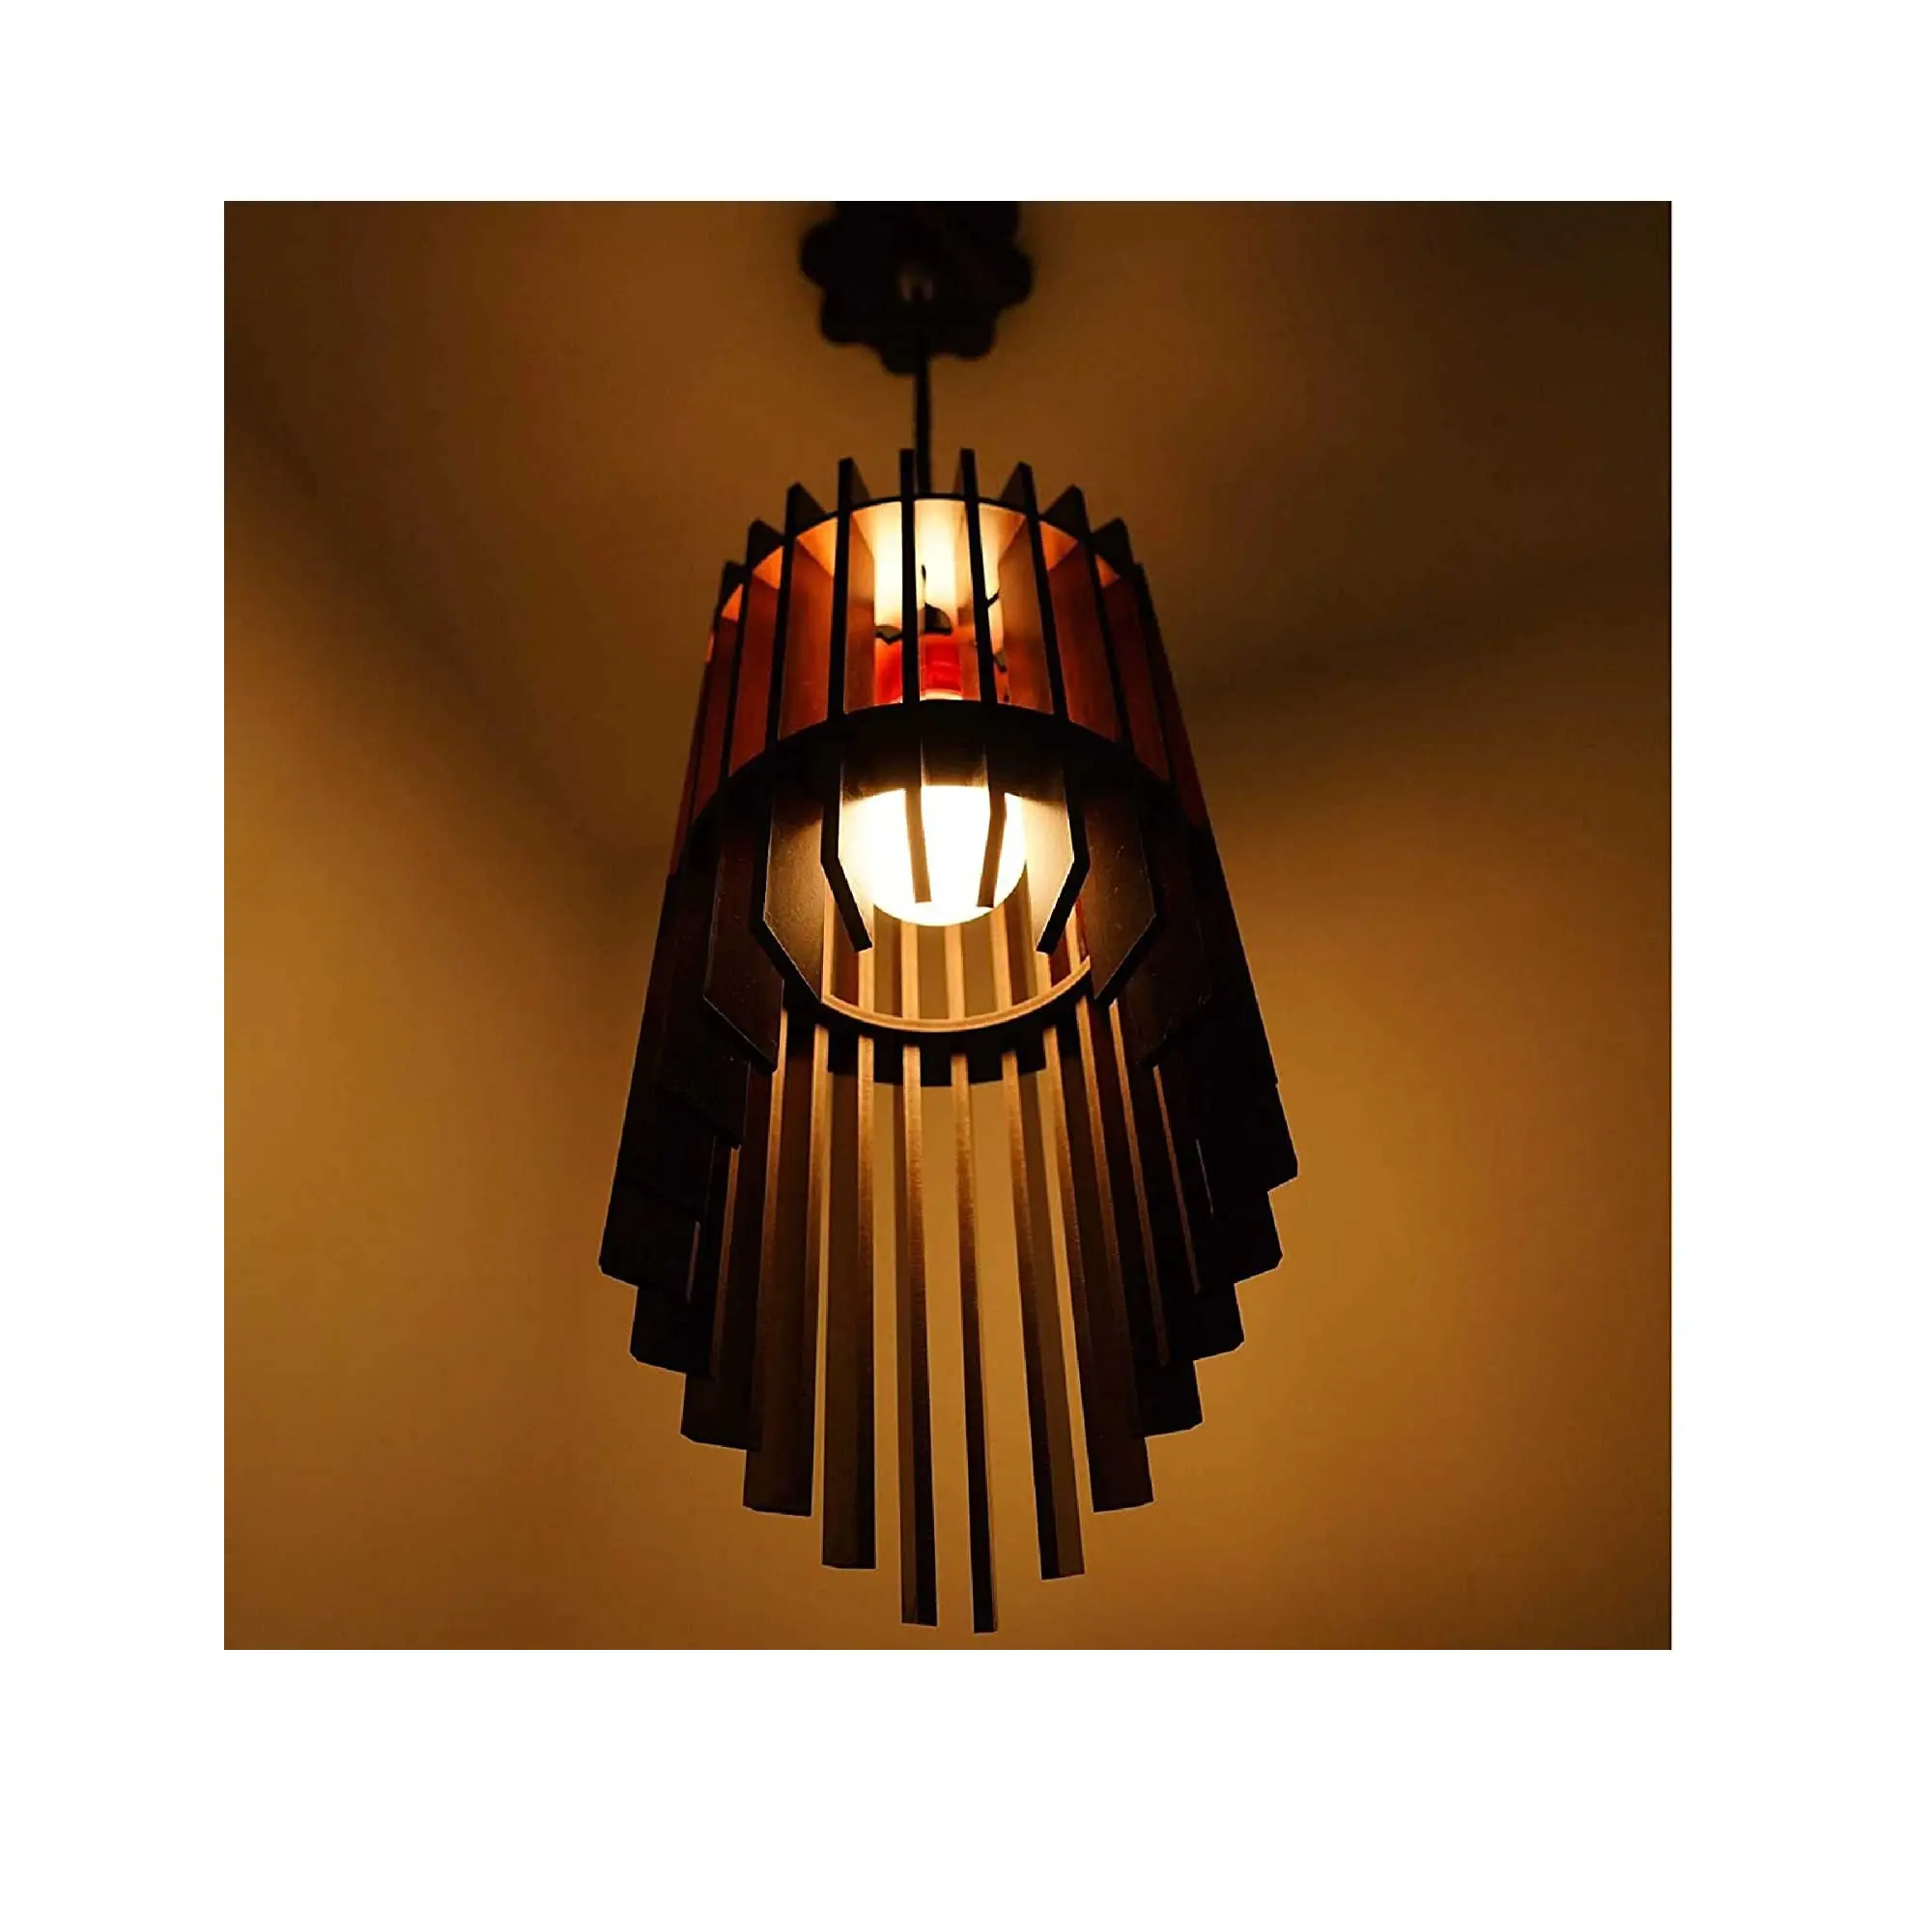 ハンギングランプ電気アンティーク木製シーリングライト (ゴールドバルブ付き) リビングルームダイニングホール家の装飾キッチン用ナイトランプ